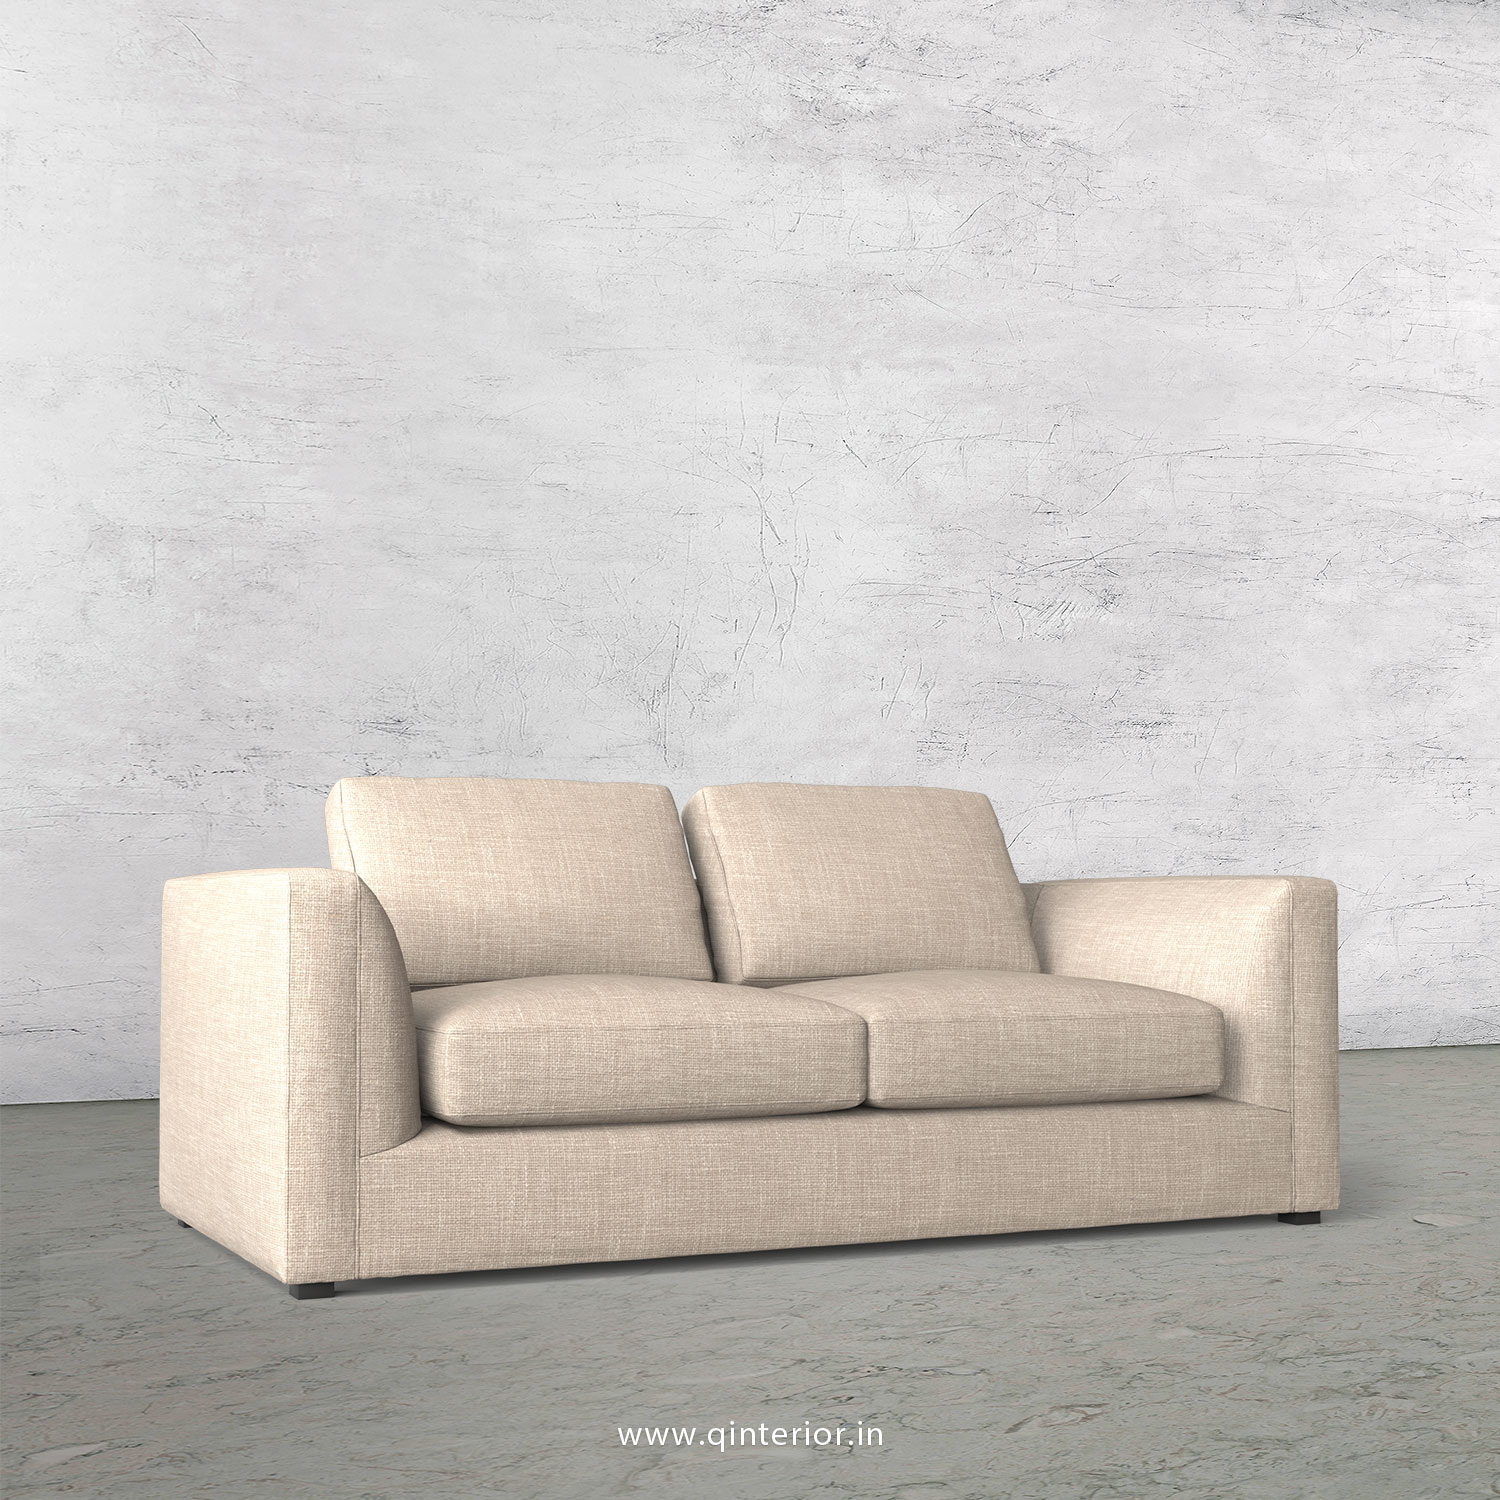 IRVINE 2 Seater Sofa in Cotton Fabric - SFA003 CP02